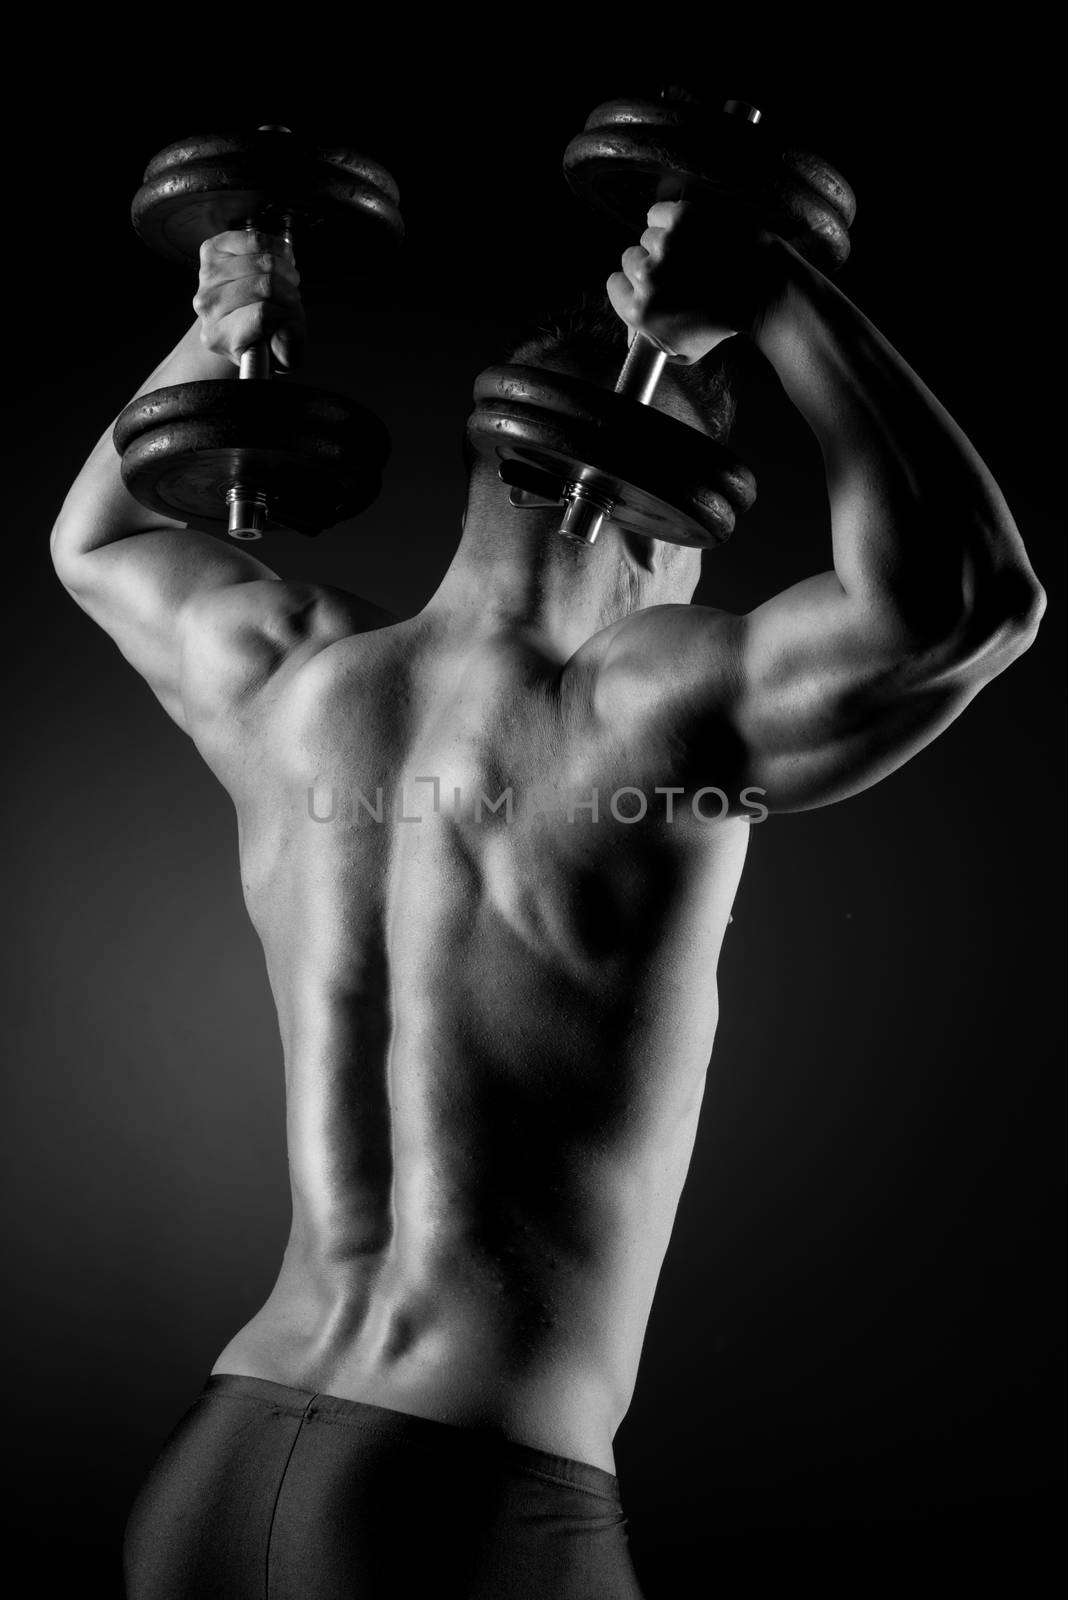 Muscular attractive man weightlifting on dark background.